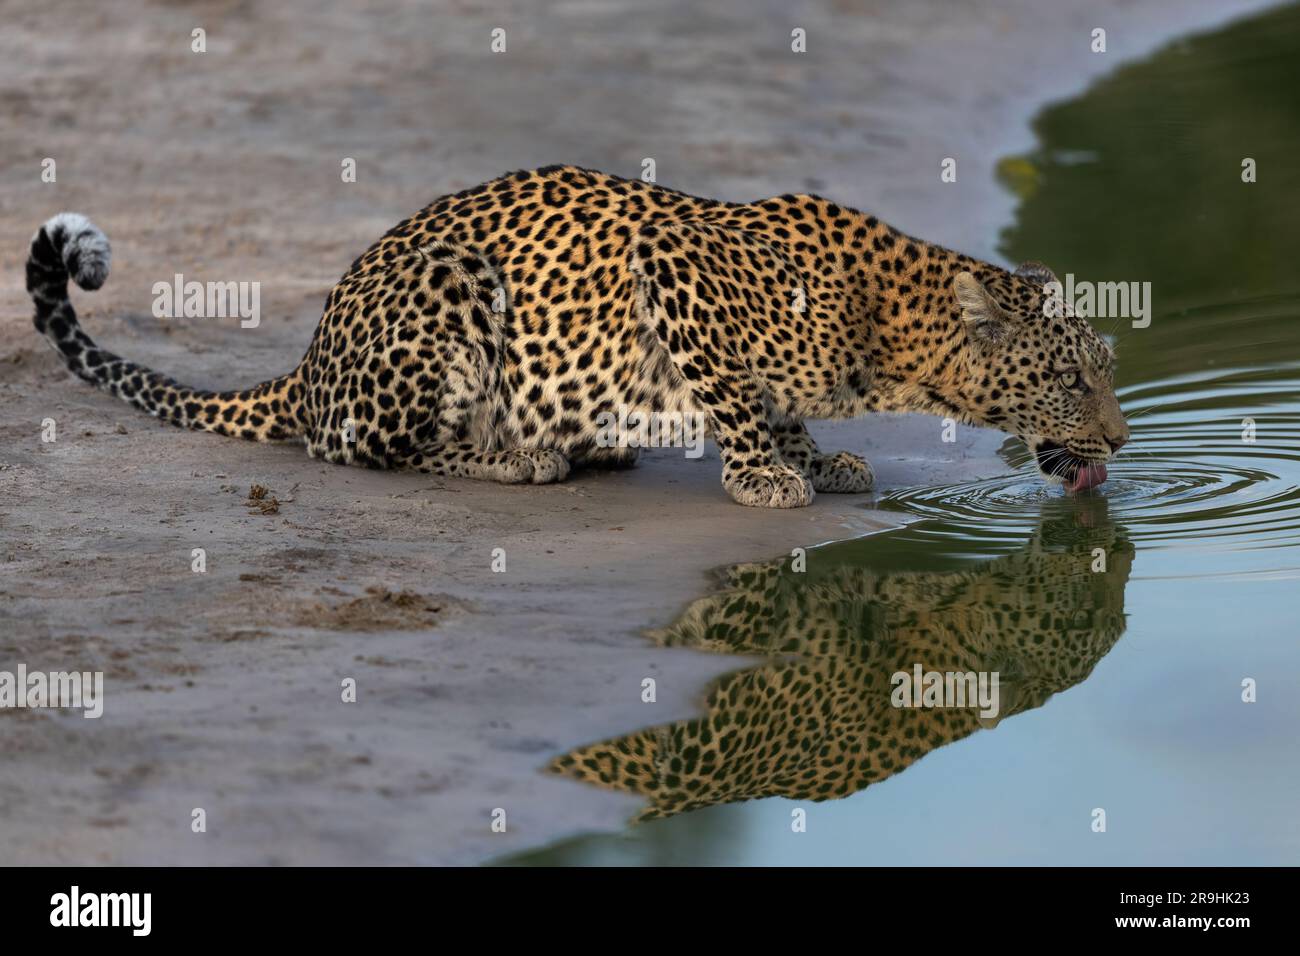 Un leopardo (femmina) sta bevendo nel buco d'acqua nella luce migliore, grande riflessione, Savute, Chobe National Park, Botswana, Africa Foto Stock